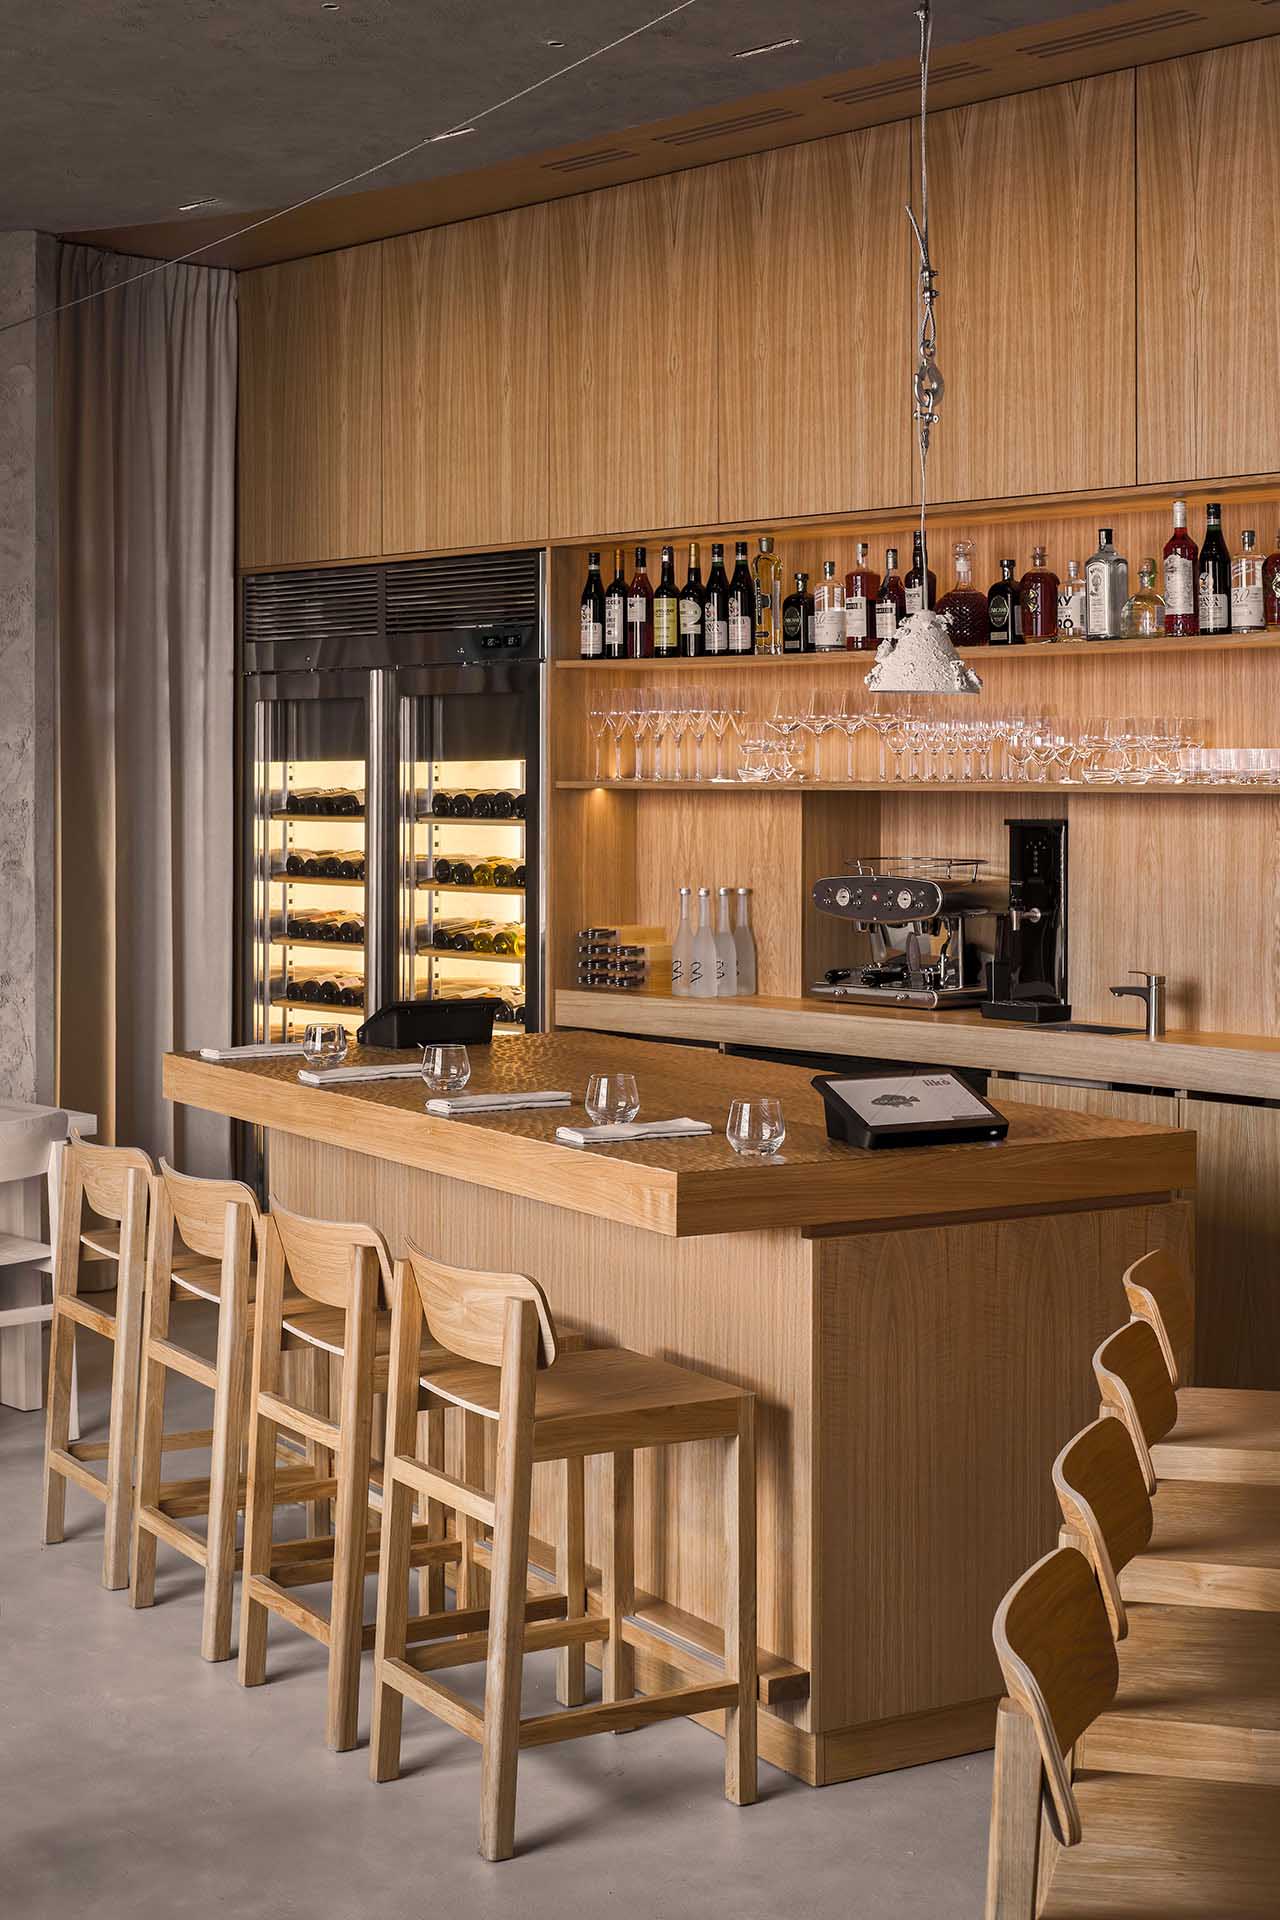 海鮮餐廳設計,餐廳設計案例,原木色,酒吧設計方案,DA bureau,聖彼得堡,極簡主義,Porto 19海鮮餐廳